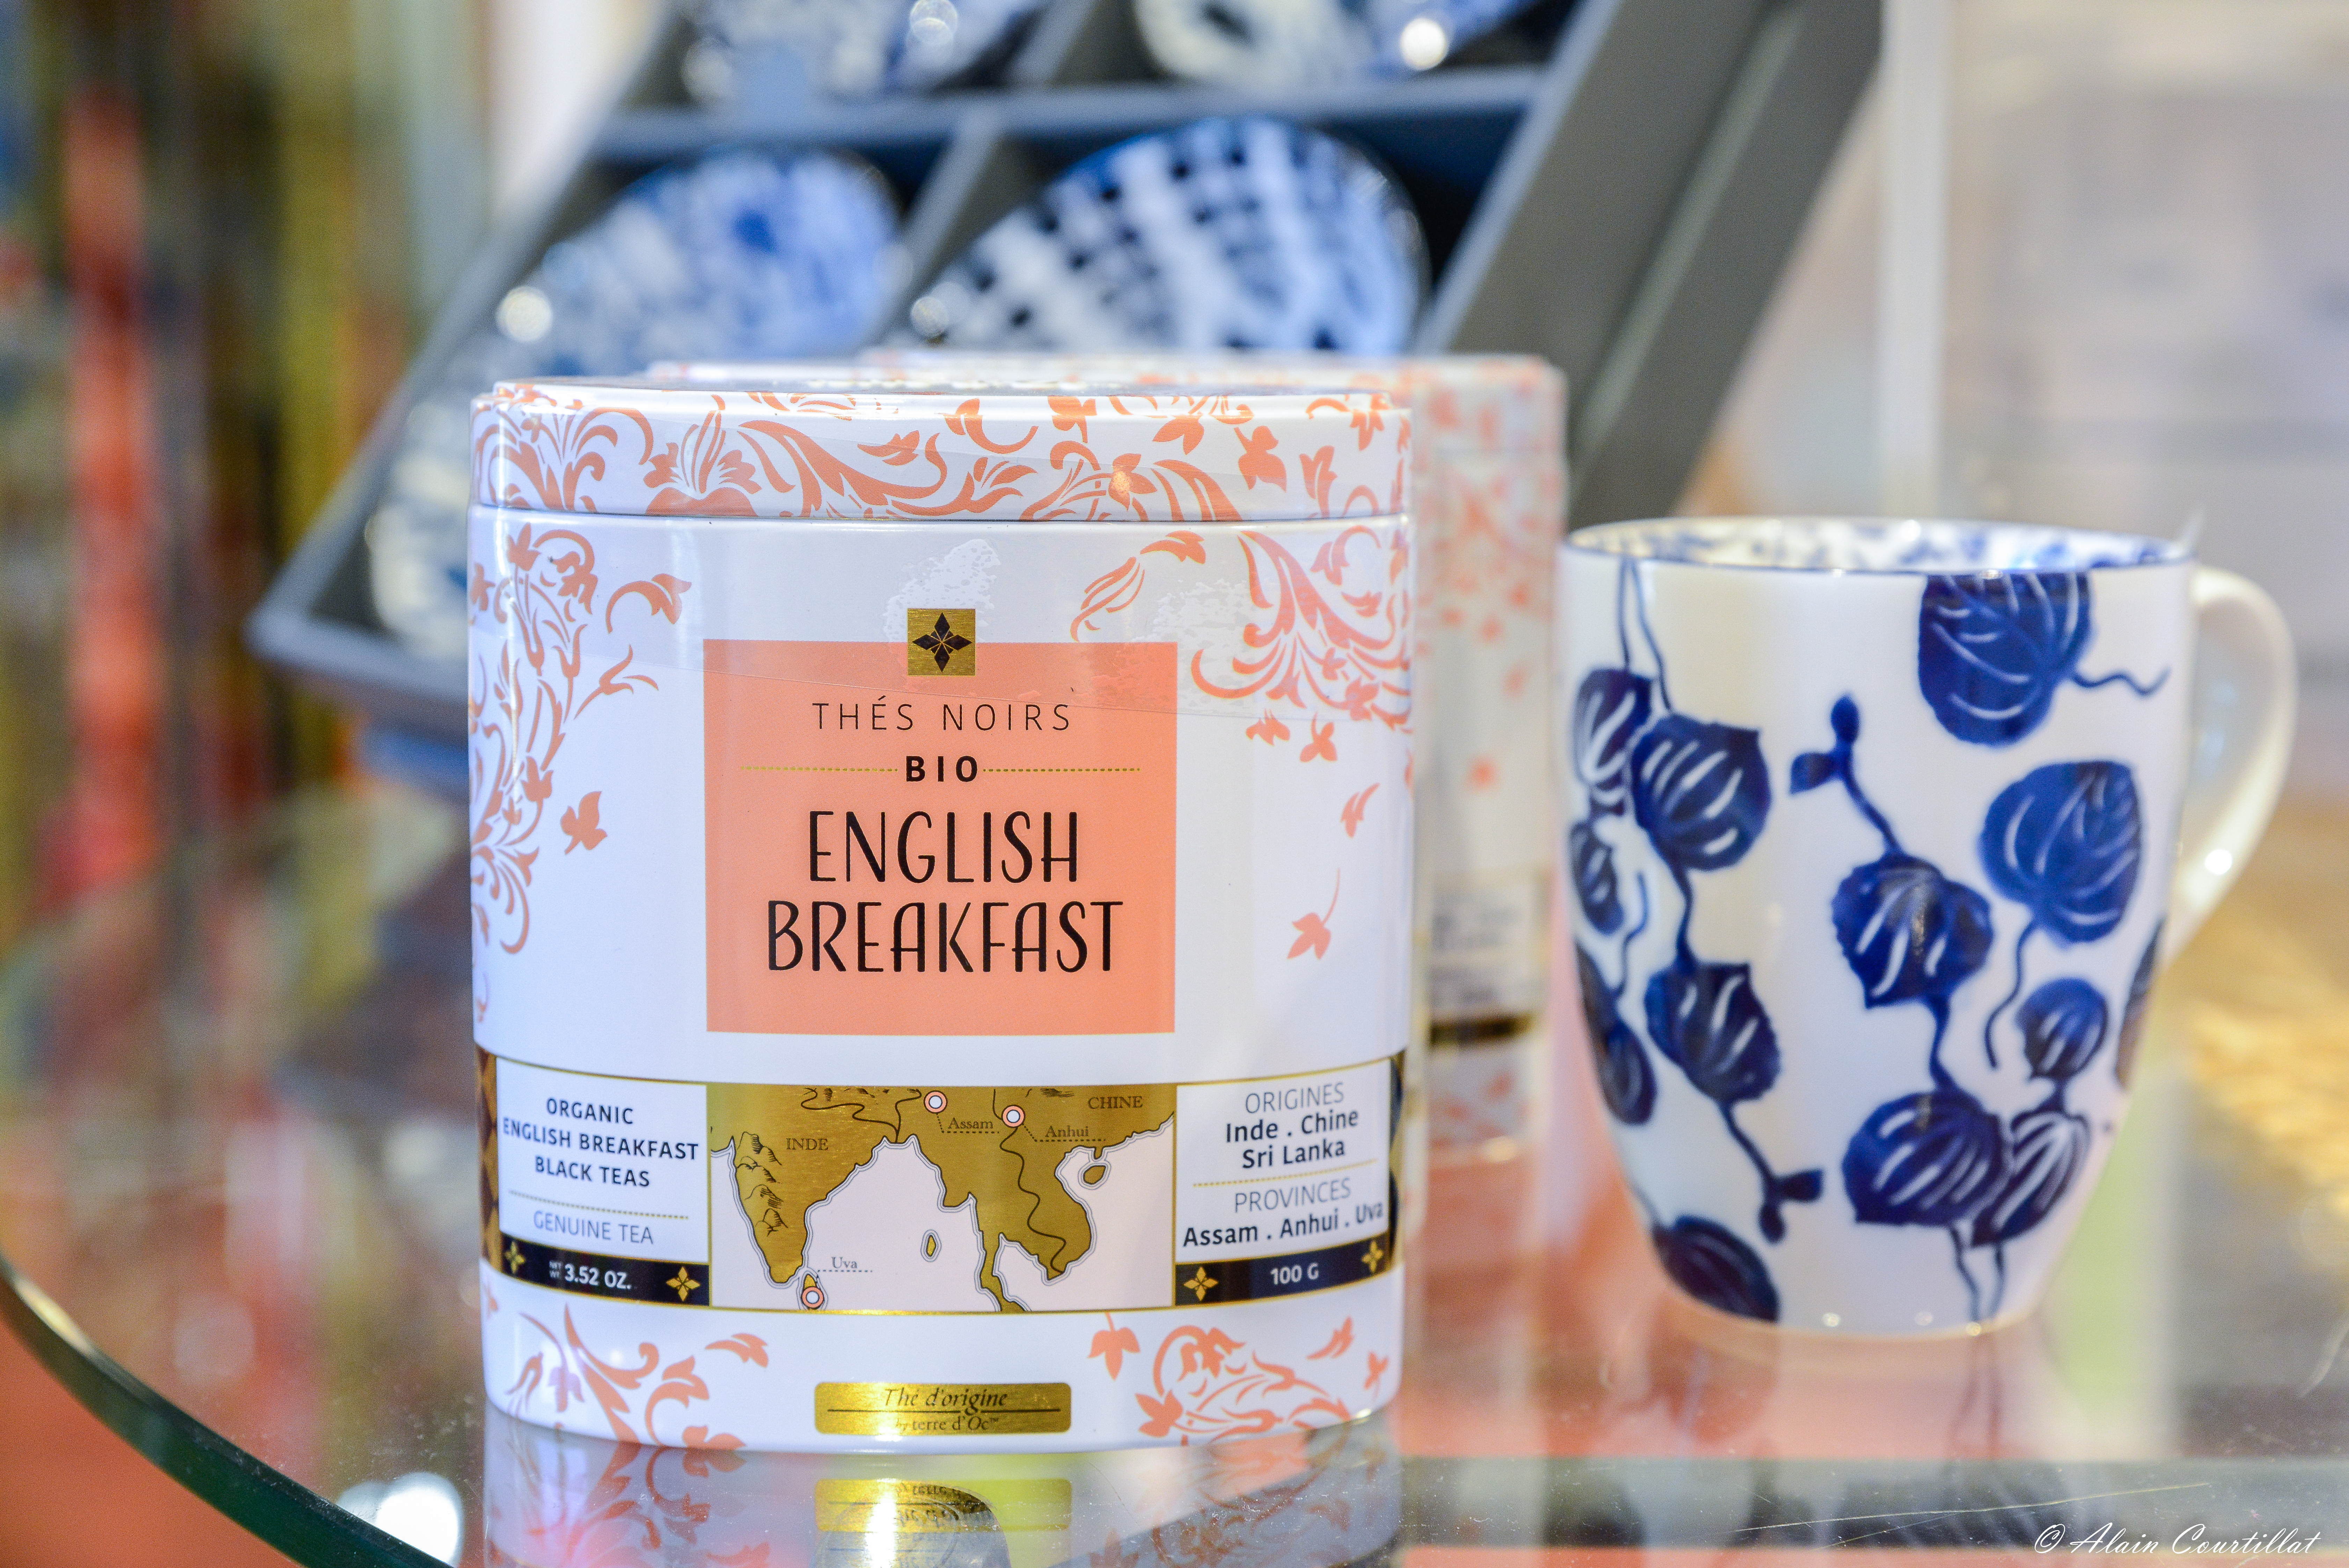 Schwarzer Tee "English Breakfast" - Bio